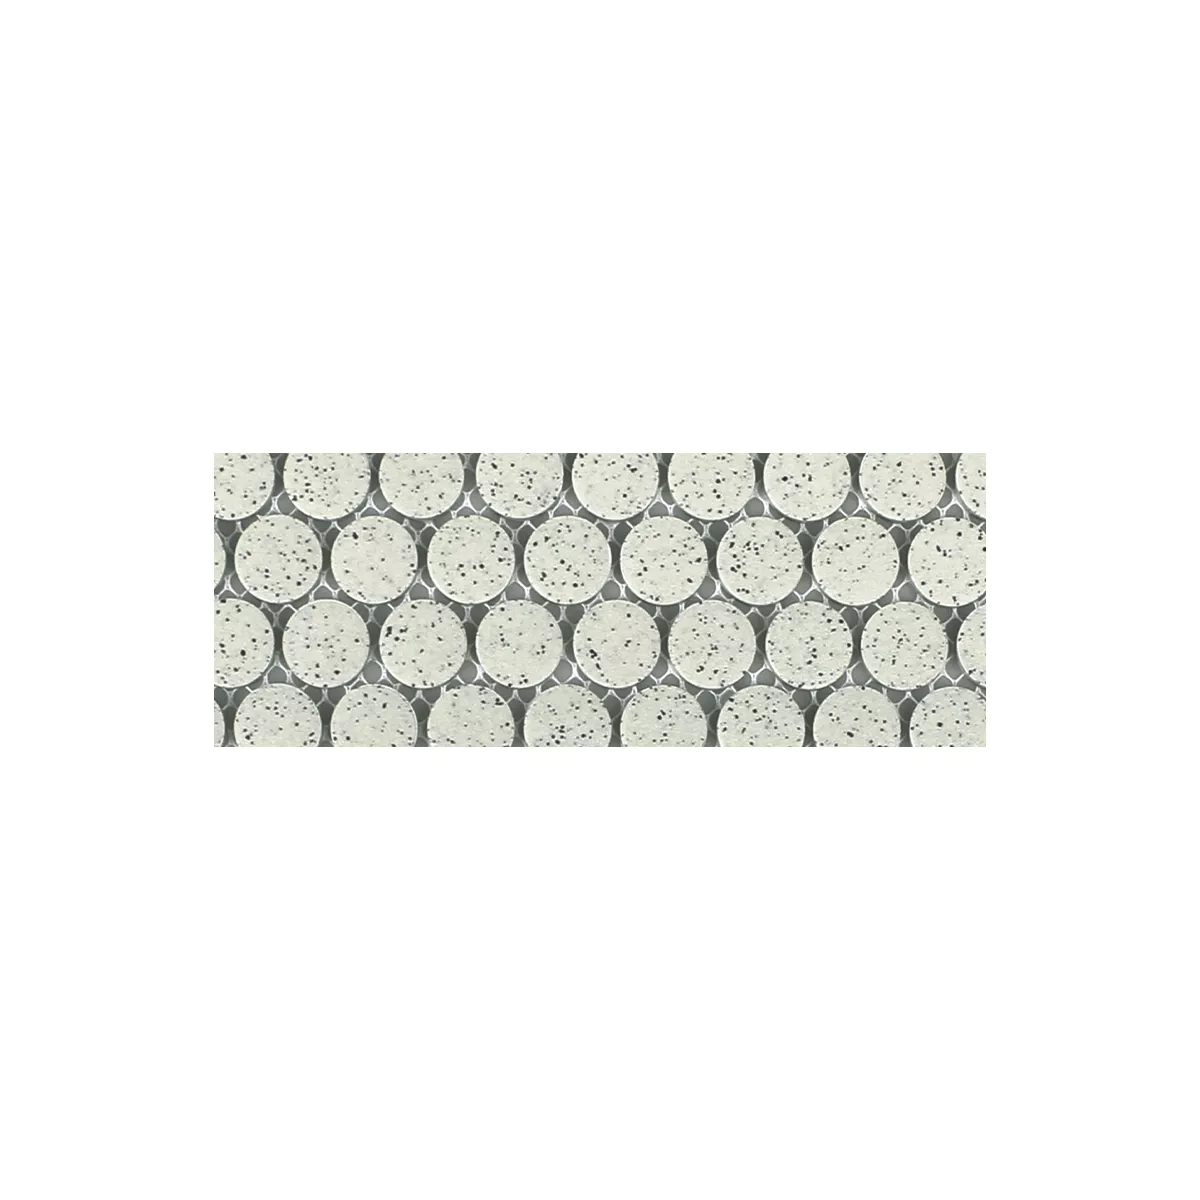 Sample Ceramic Mosaic Tiles Luanda Beige Button